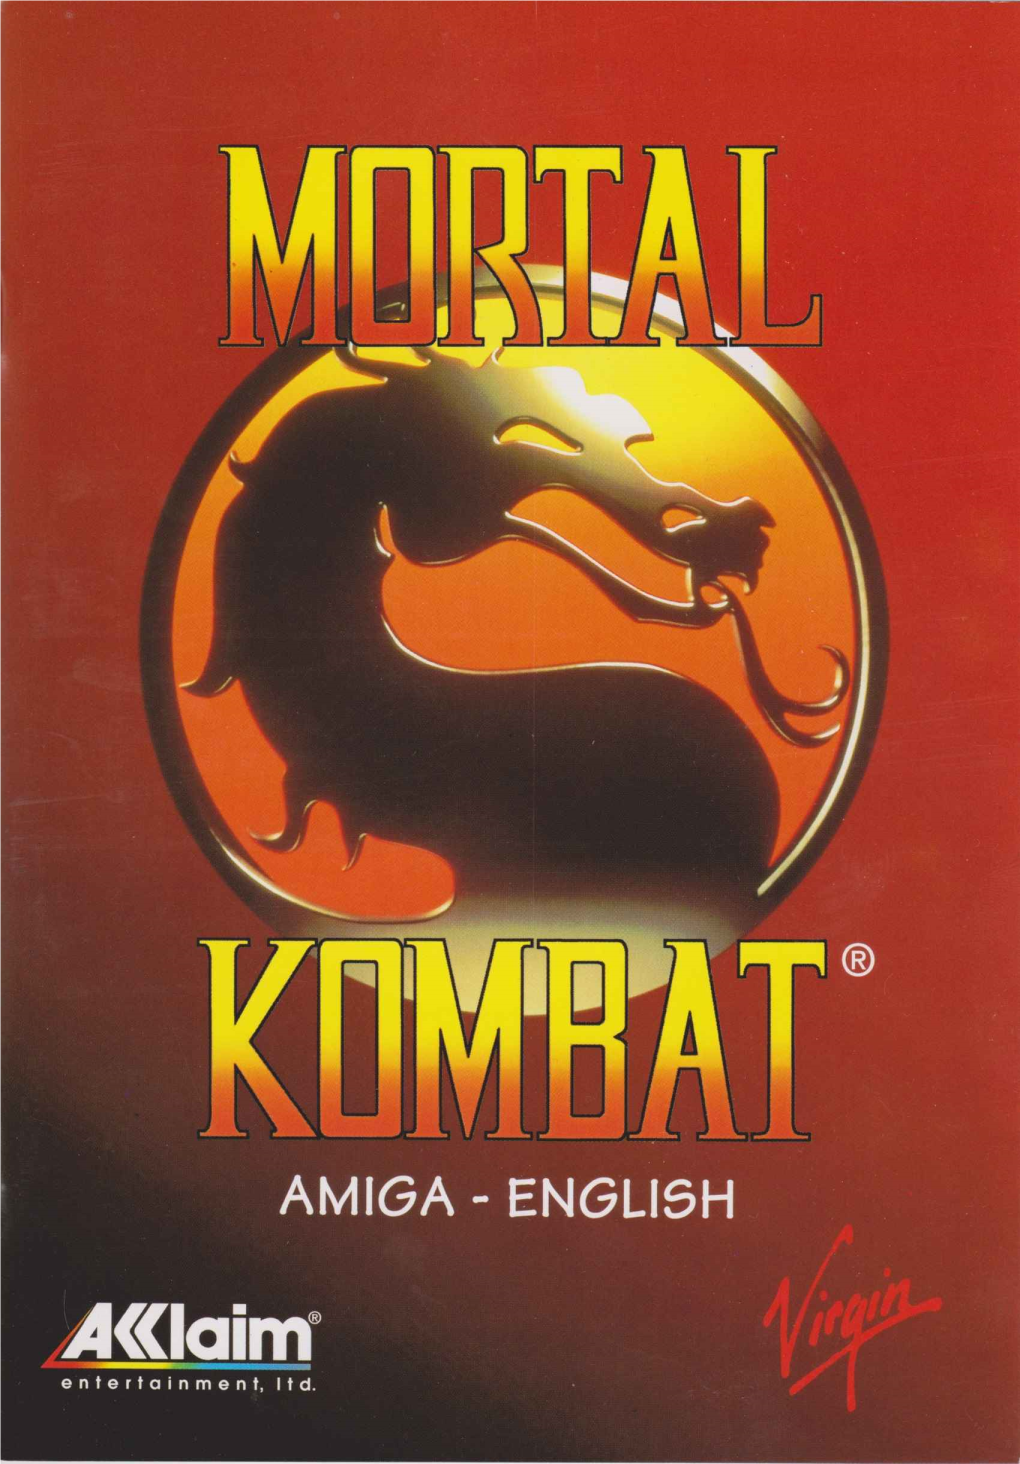 Mortal Kombat Unterliegt Einem Sehr Strengen Ehrenkodex, Aber Hält Sich Daran Irgendwer? COPYRIGHT-ERKLÄRUNGEN